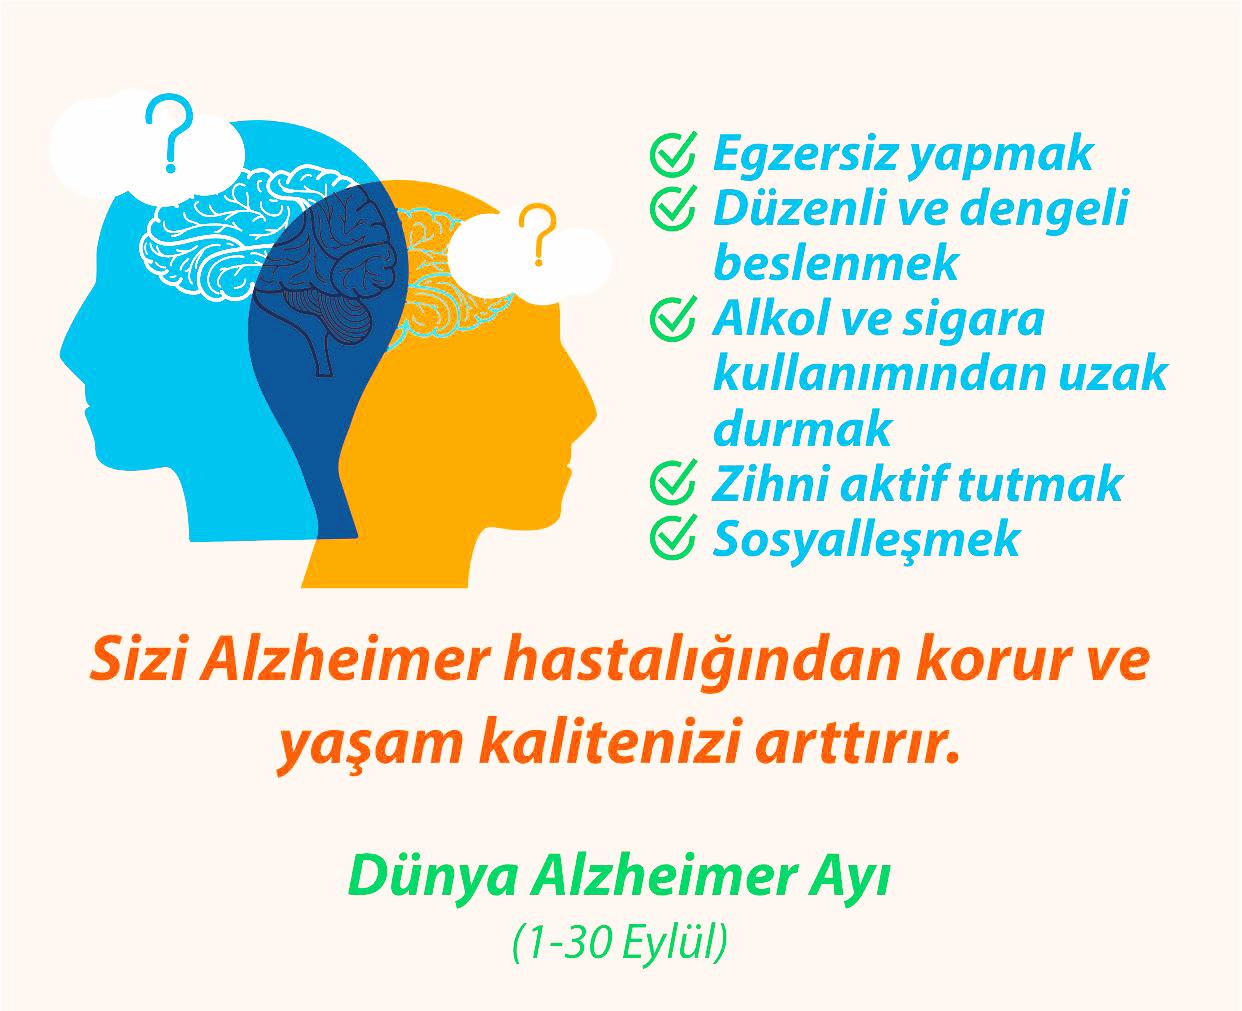 1-30 Eylül Dünya Alzheimer Ayı.jpg